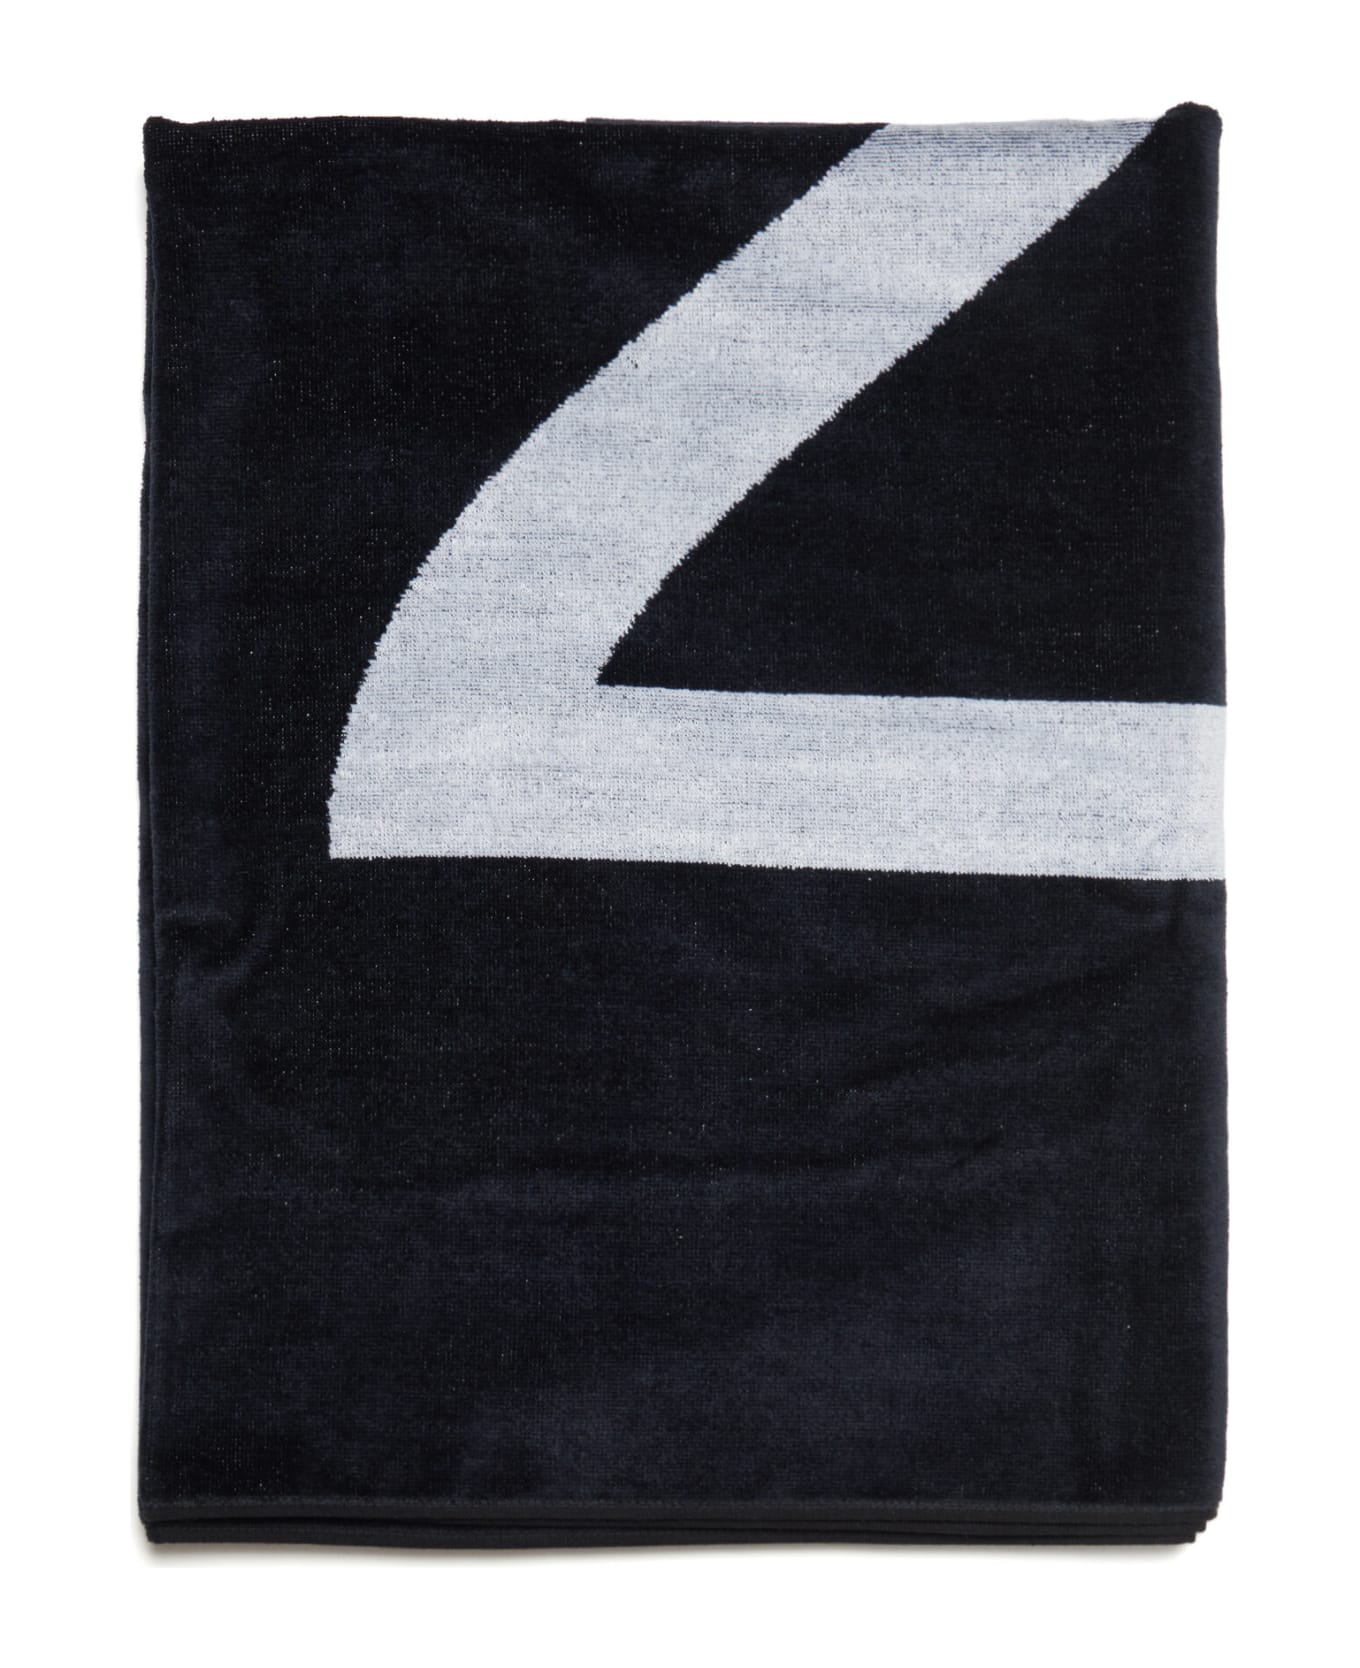 N.21 N21h2u Towel N°21 Black Terry Beach Towel With Maxi-logo - Black